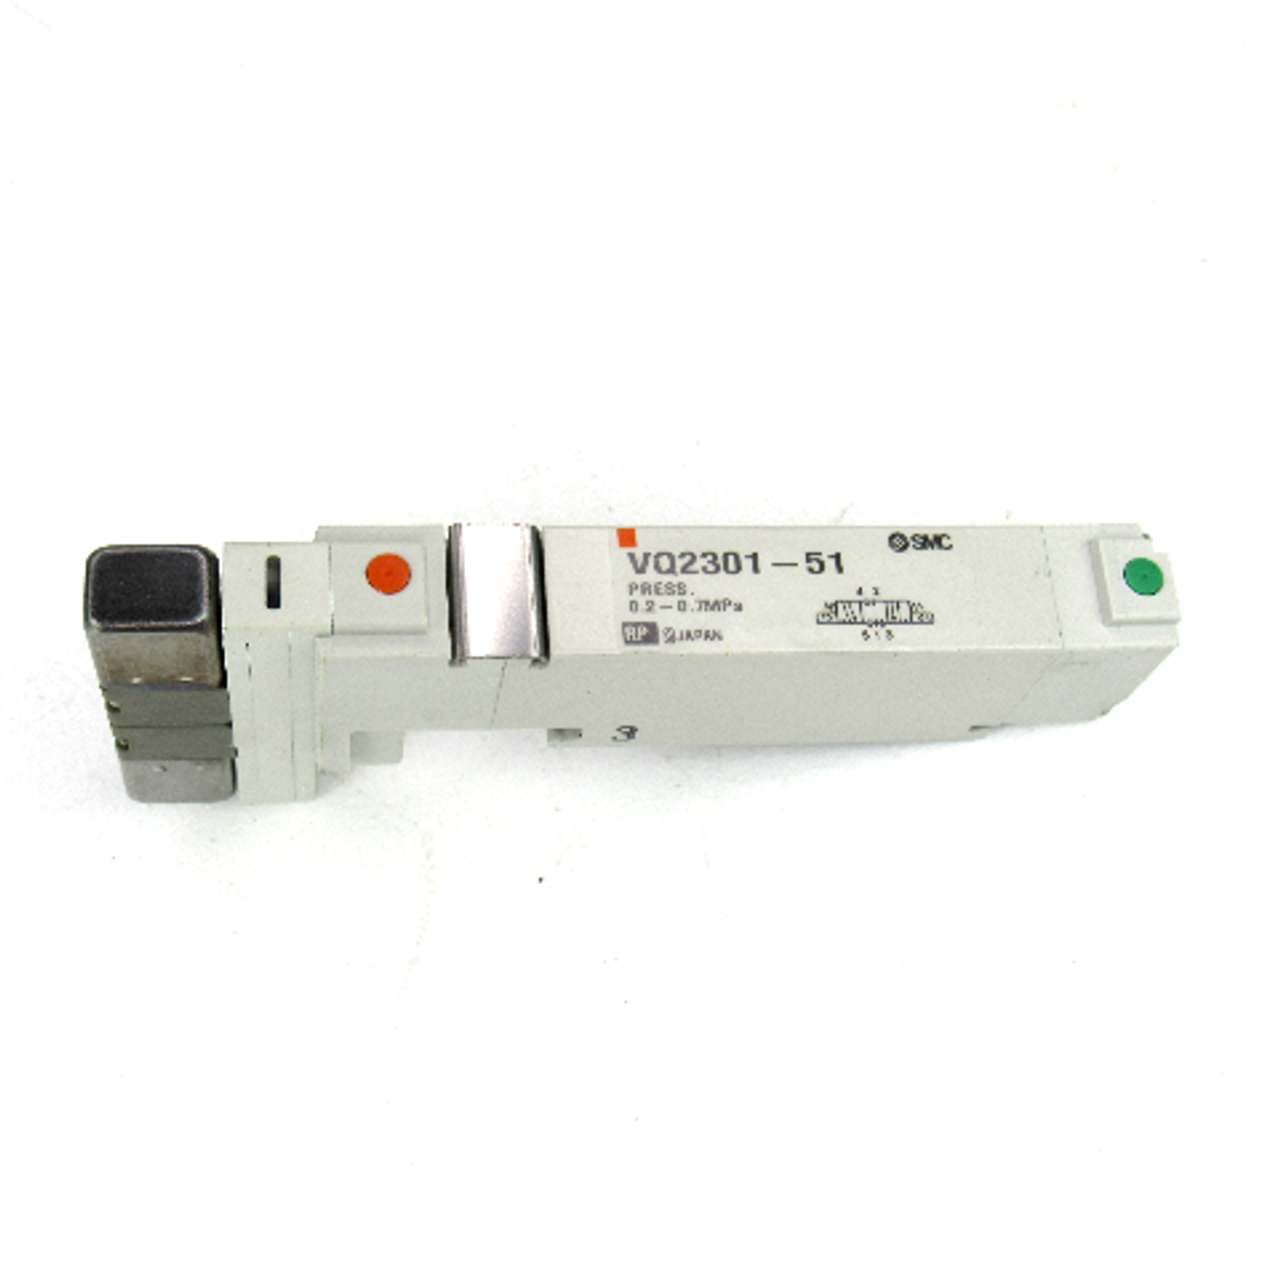 SMC VQ2301-51 Plug-In Solenoid Valve, 3/8" Pipe Size, 24V DC